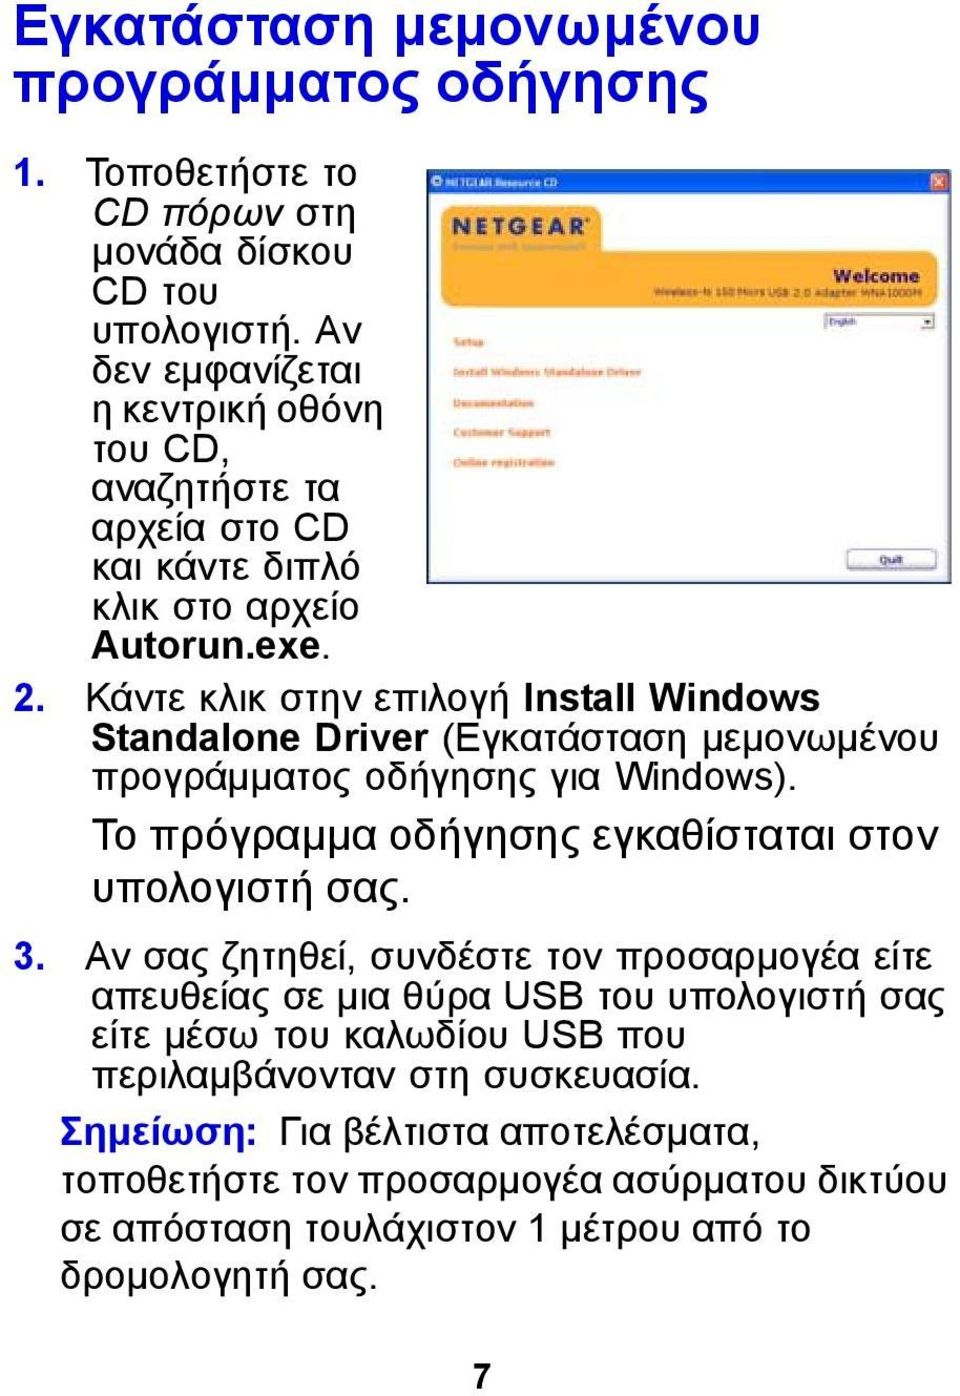 Κάντε κλικ στην επιλογή Install Windows Standalone Driver (Εγκατάσταση μεμονωμένου προγράμματος οδήγησης για Windows). Το πρόγραμμα οδήγησης εγκαθίσταται στον υπολογιστή σας.